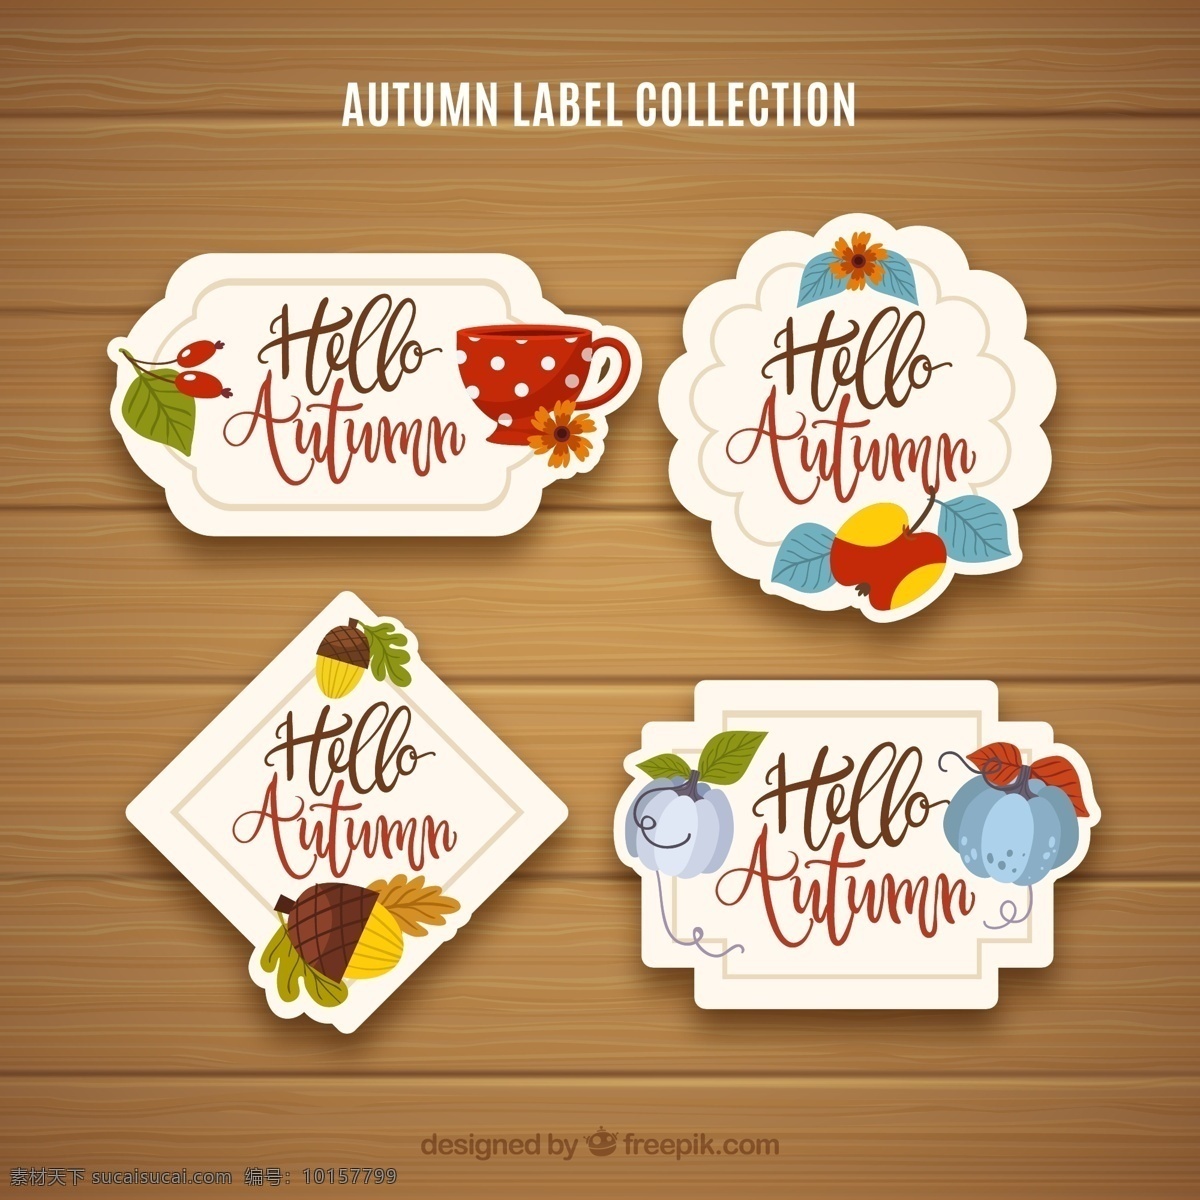 款 彩色 秋季 标签 浆果 茶杯 橡子 树叶 苹果 南瓜 花卉 木板 autumn 文化艺术 节日庆祝